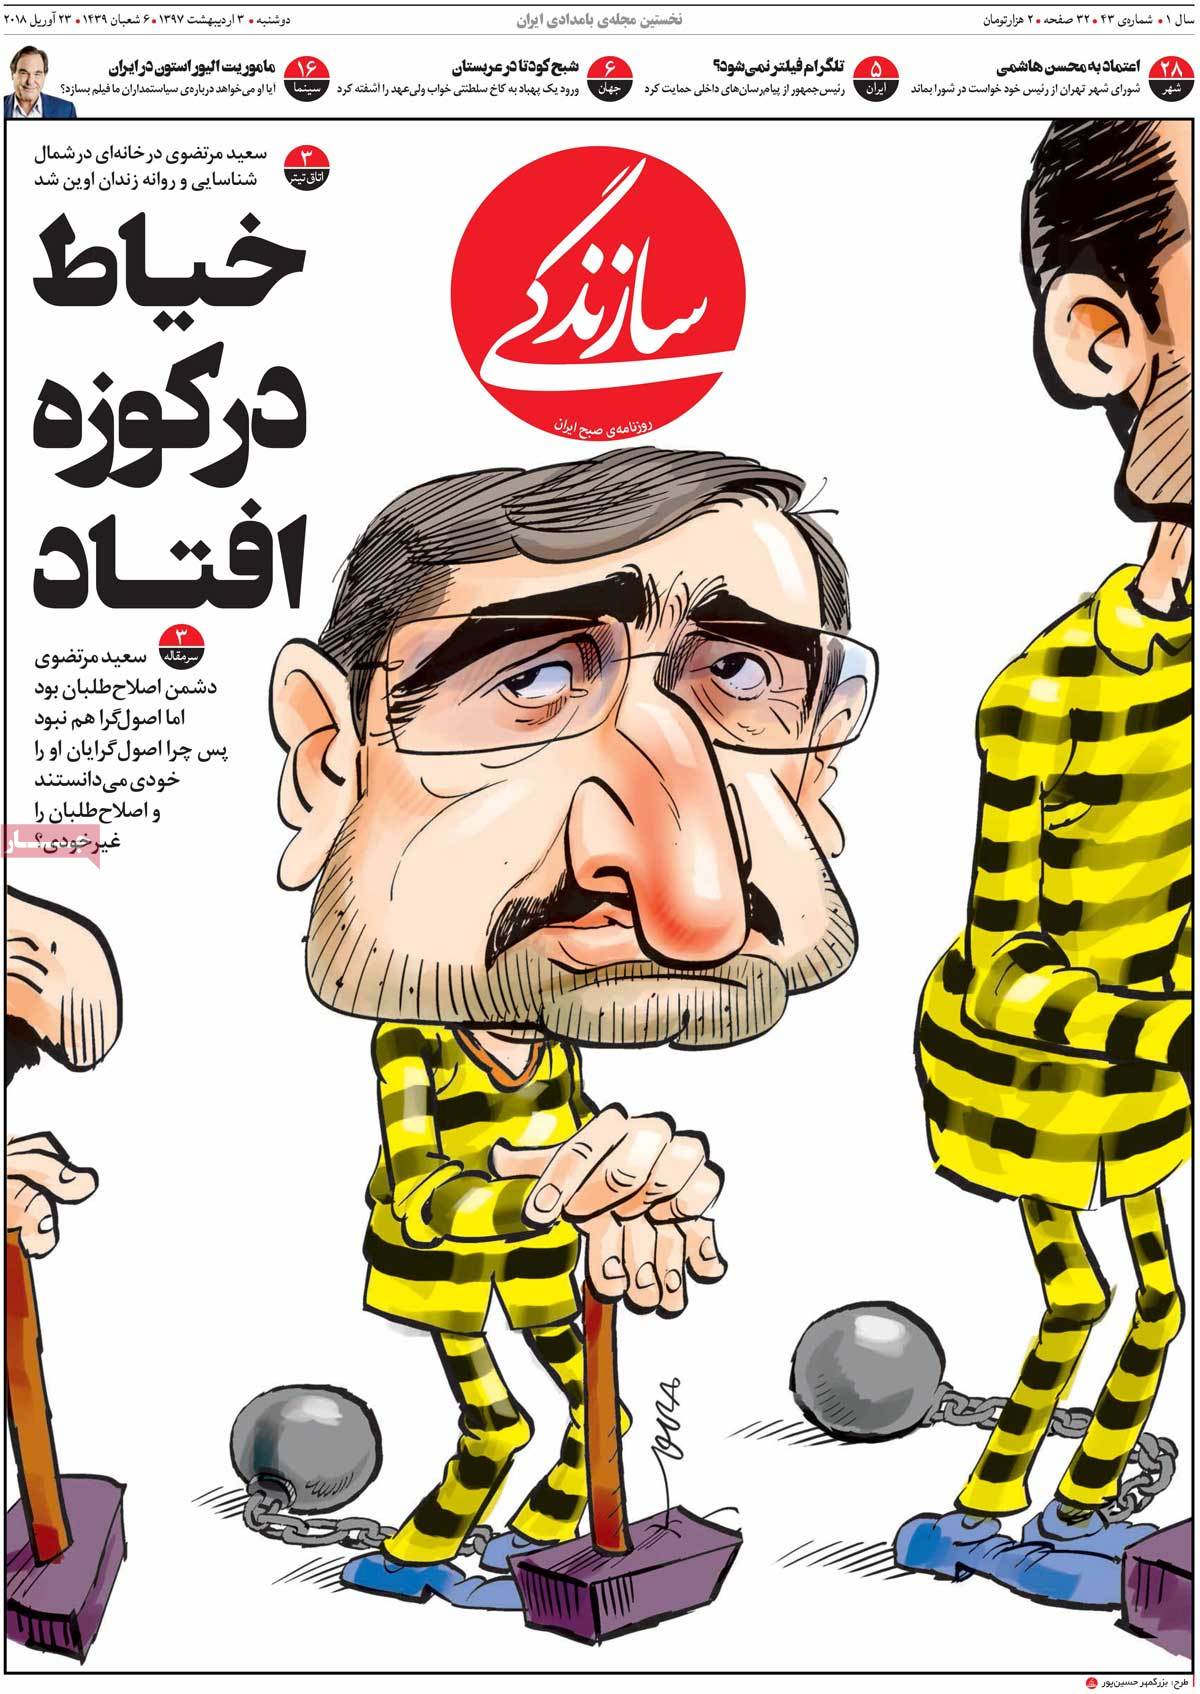 عکس و تیتر جذاب روزنامه سازندگی در مورد بازداشت سعید مرتضوی